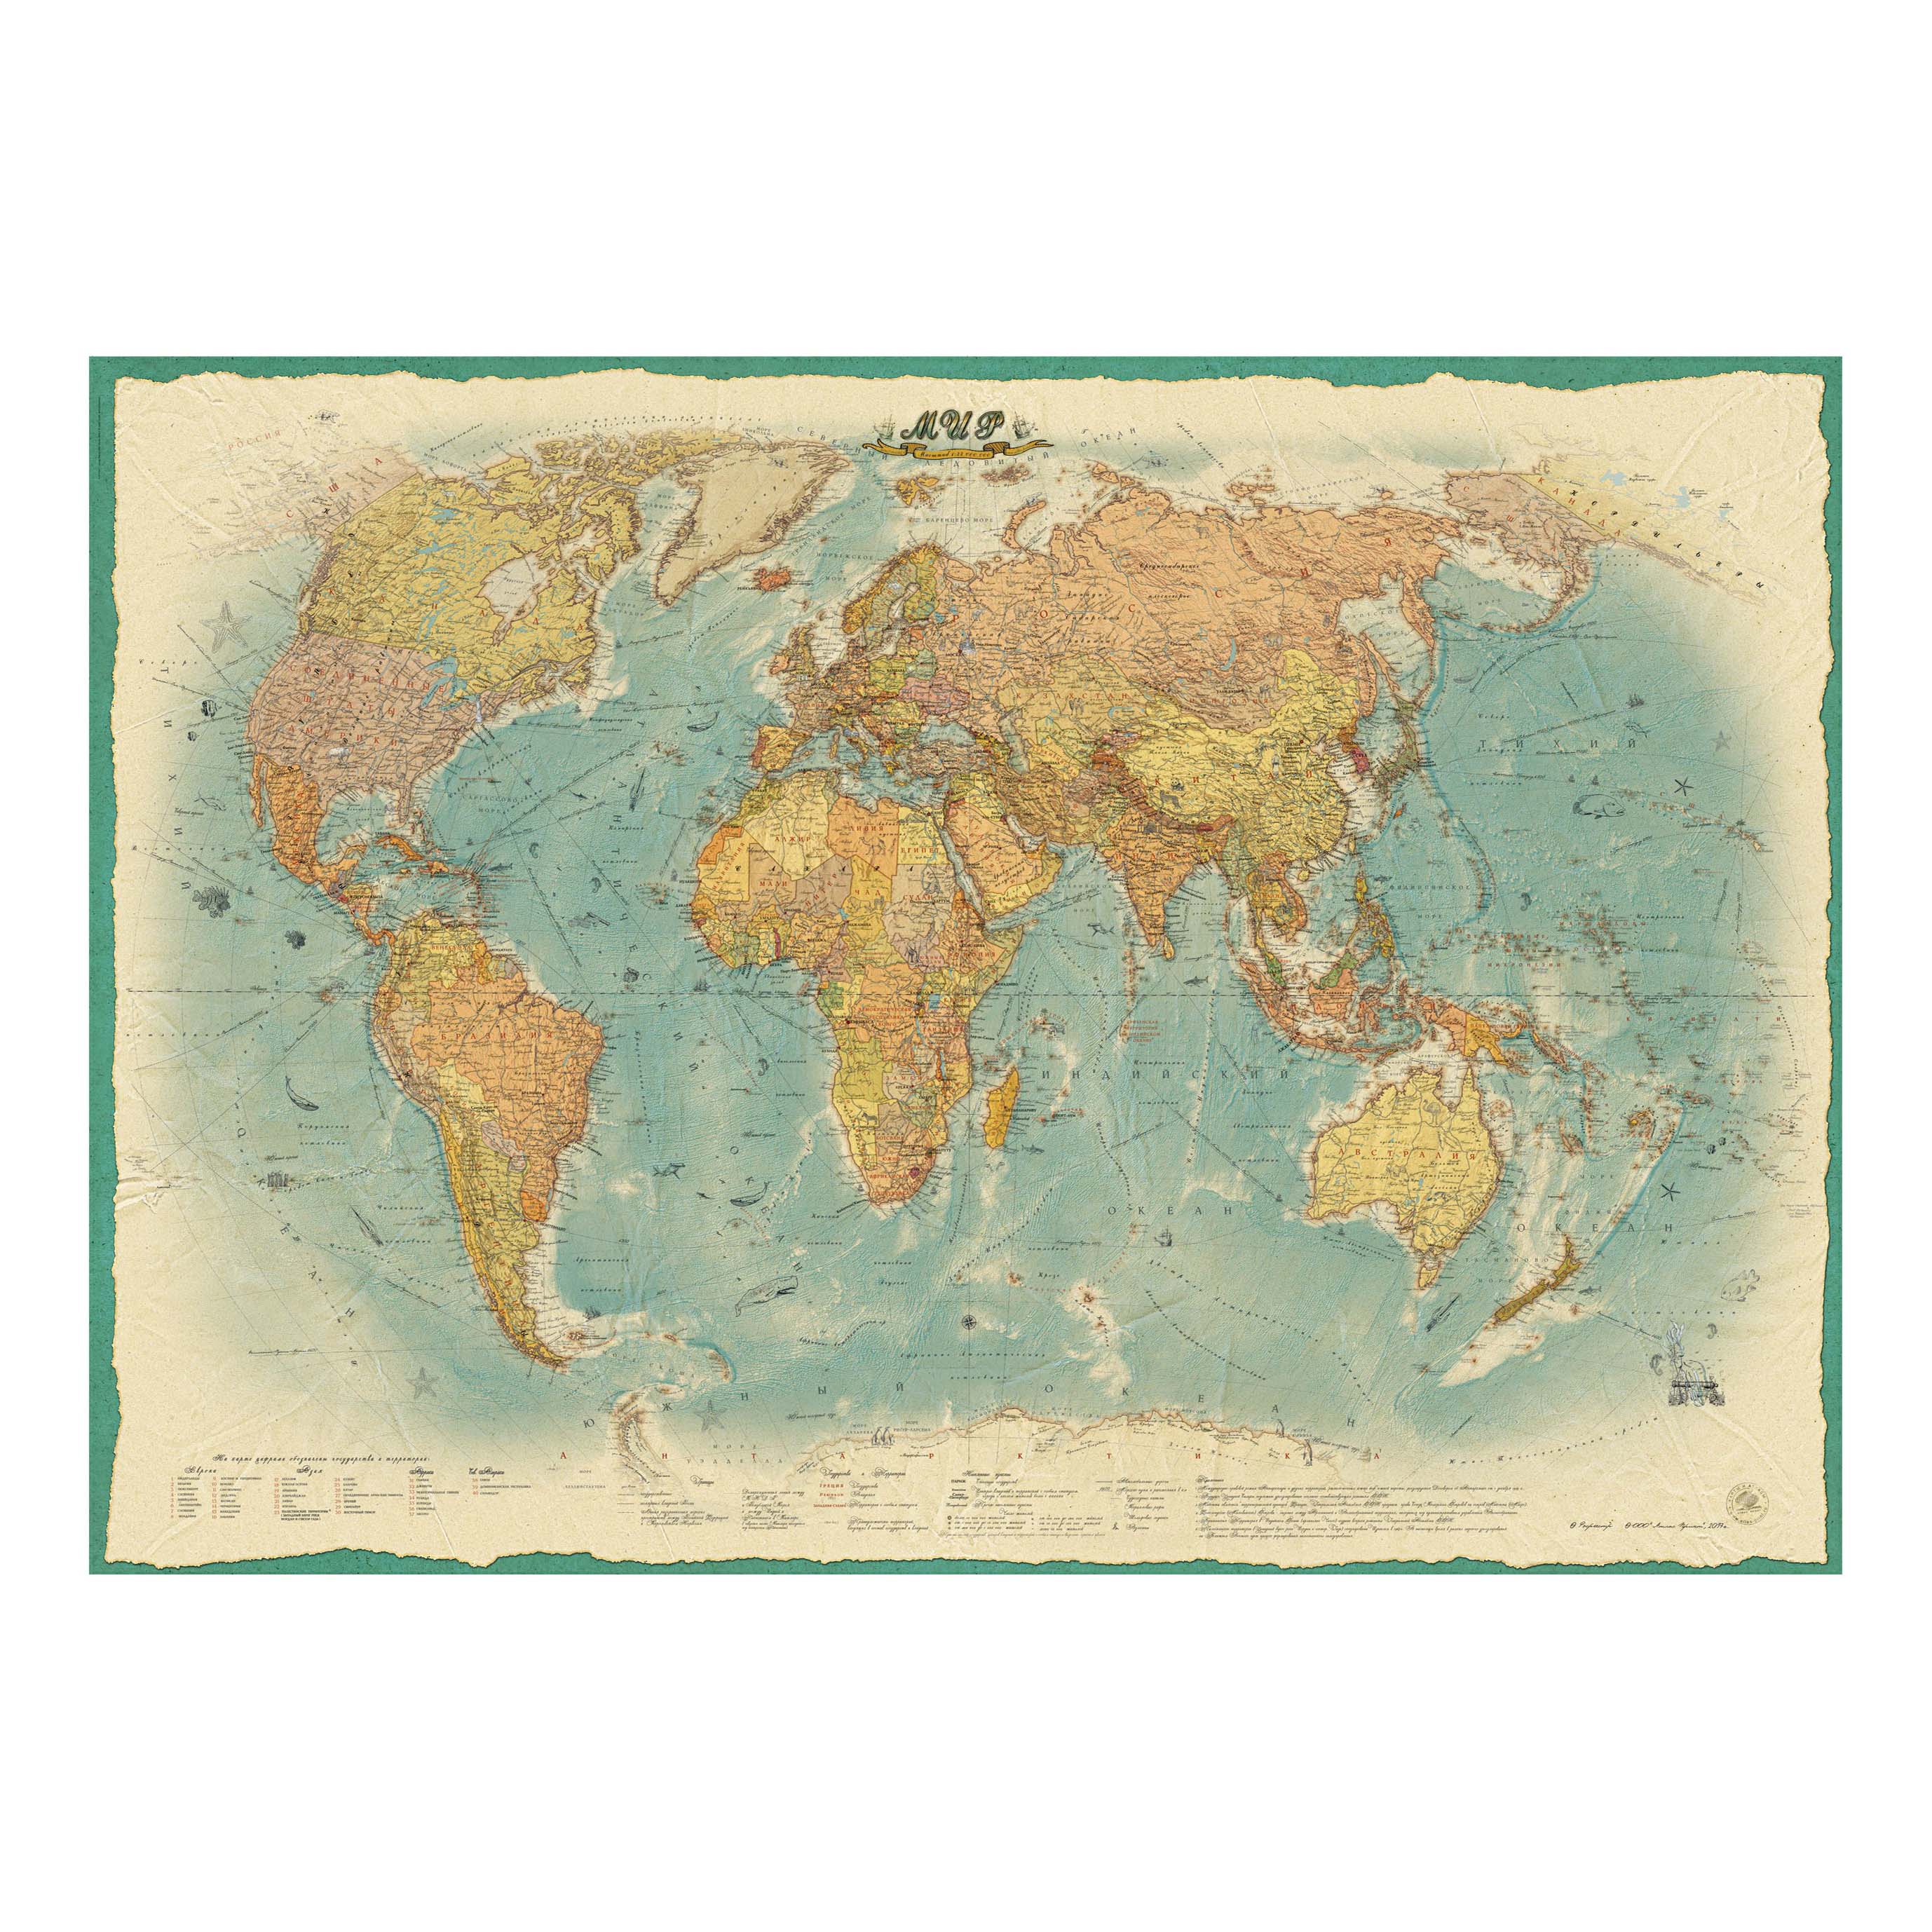 Покажи красивую карту. Карта настенная атлас принт мир ЭКОДИЗАЙН 2.02X1.43 М. Настенная карта атлас принт мир политическая 1:22,1,54х1,07м. Ретро стиль.